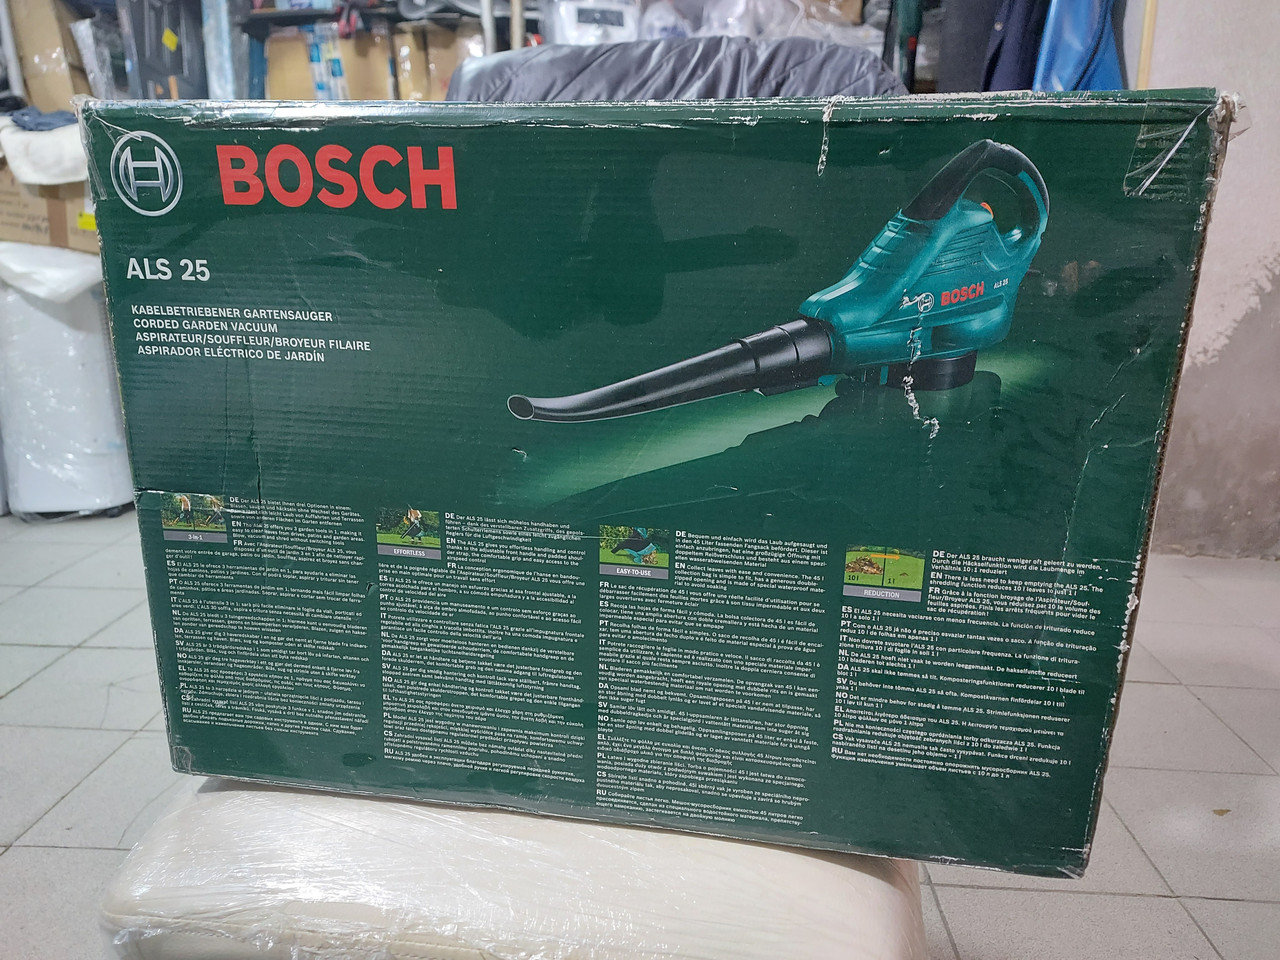 Aspirateur-souffleur Bosch ALS25